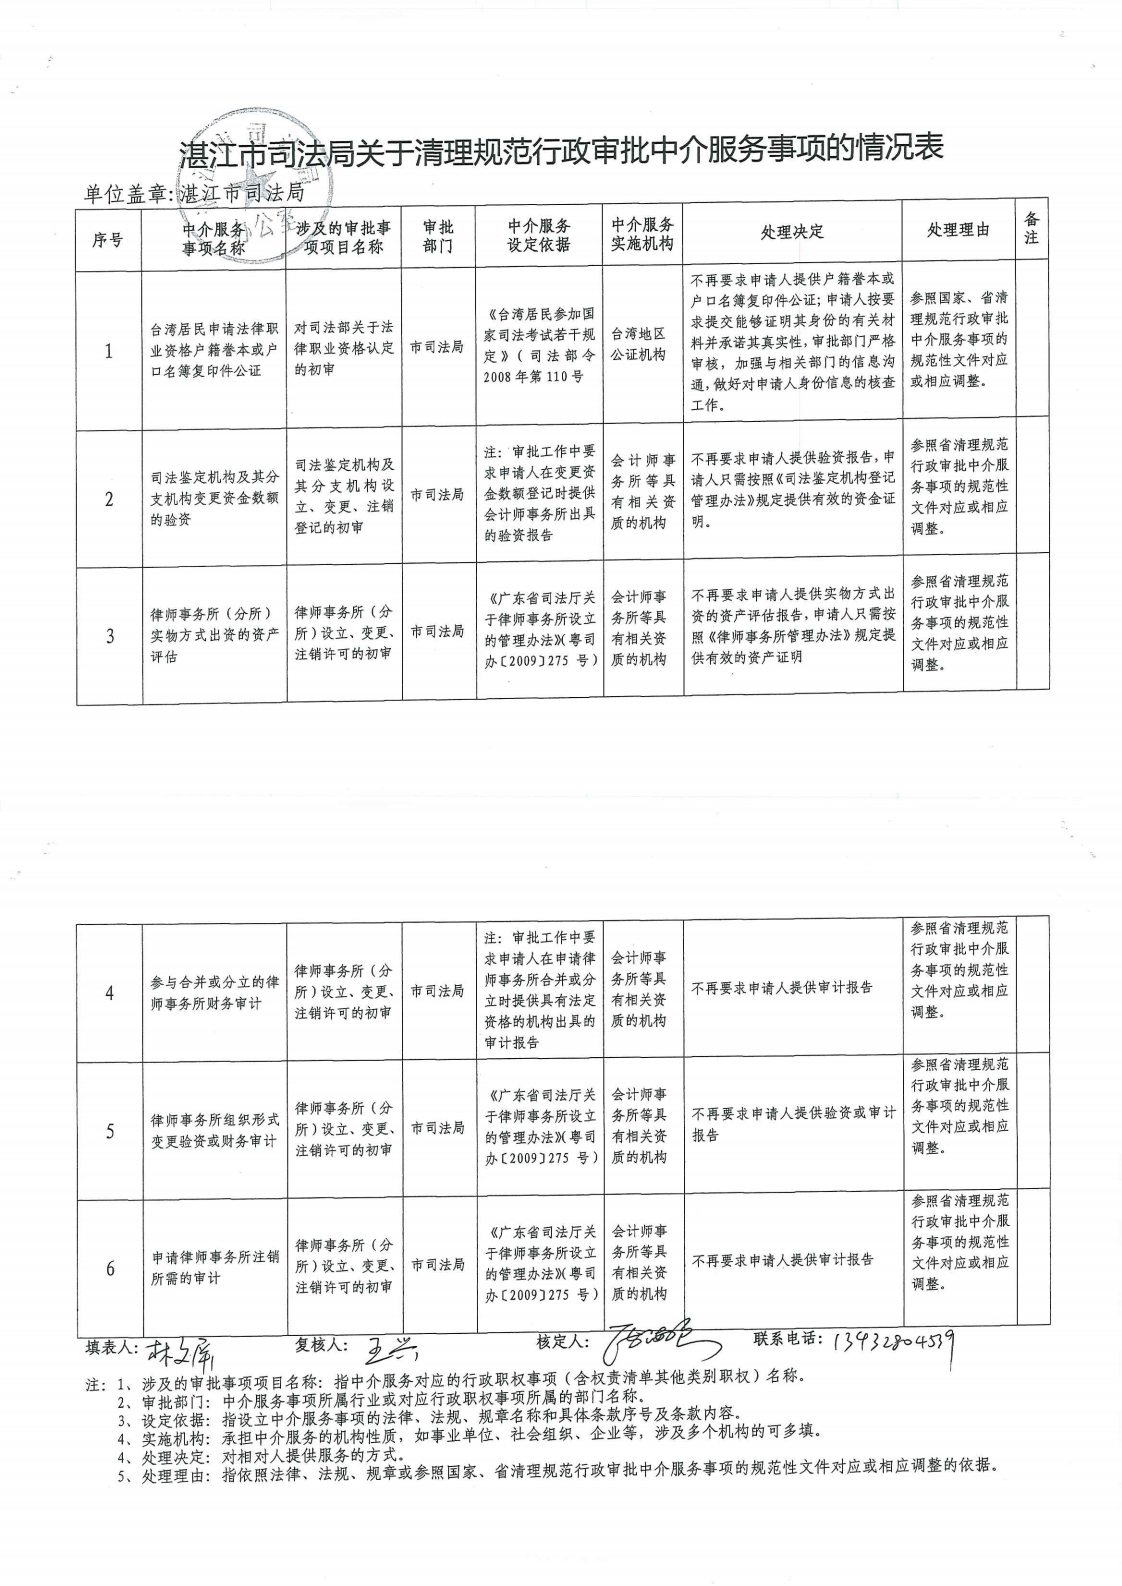 湛江市司法局关于清理规范行政审批中介服务事项的情况表_0.png